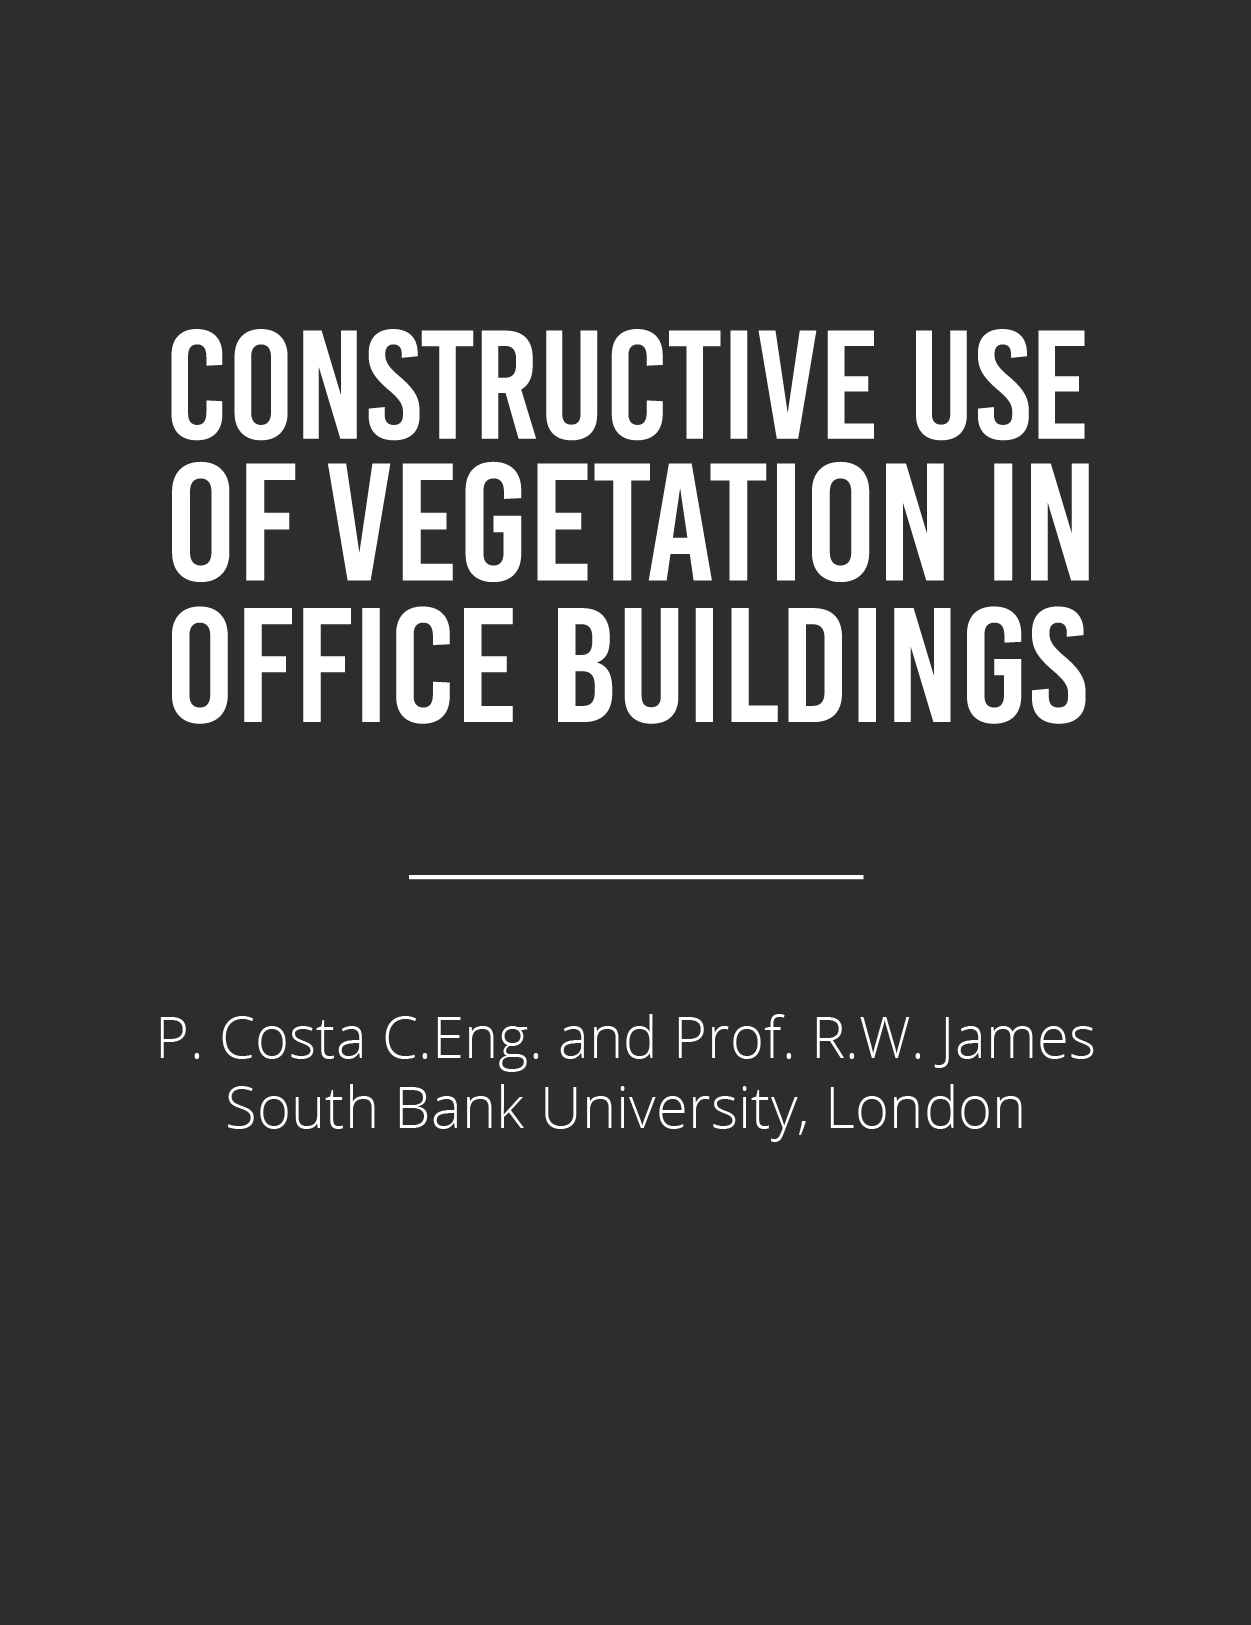 Vegetation in Office Buildings